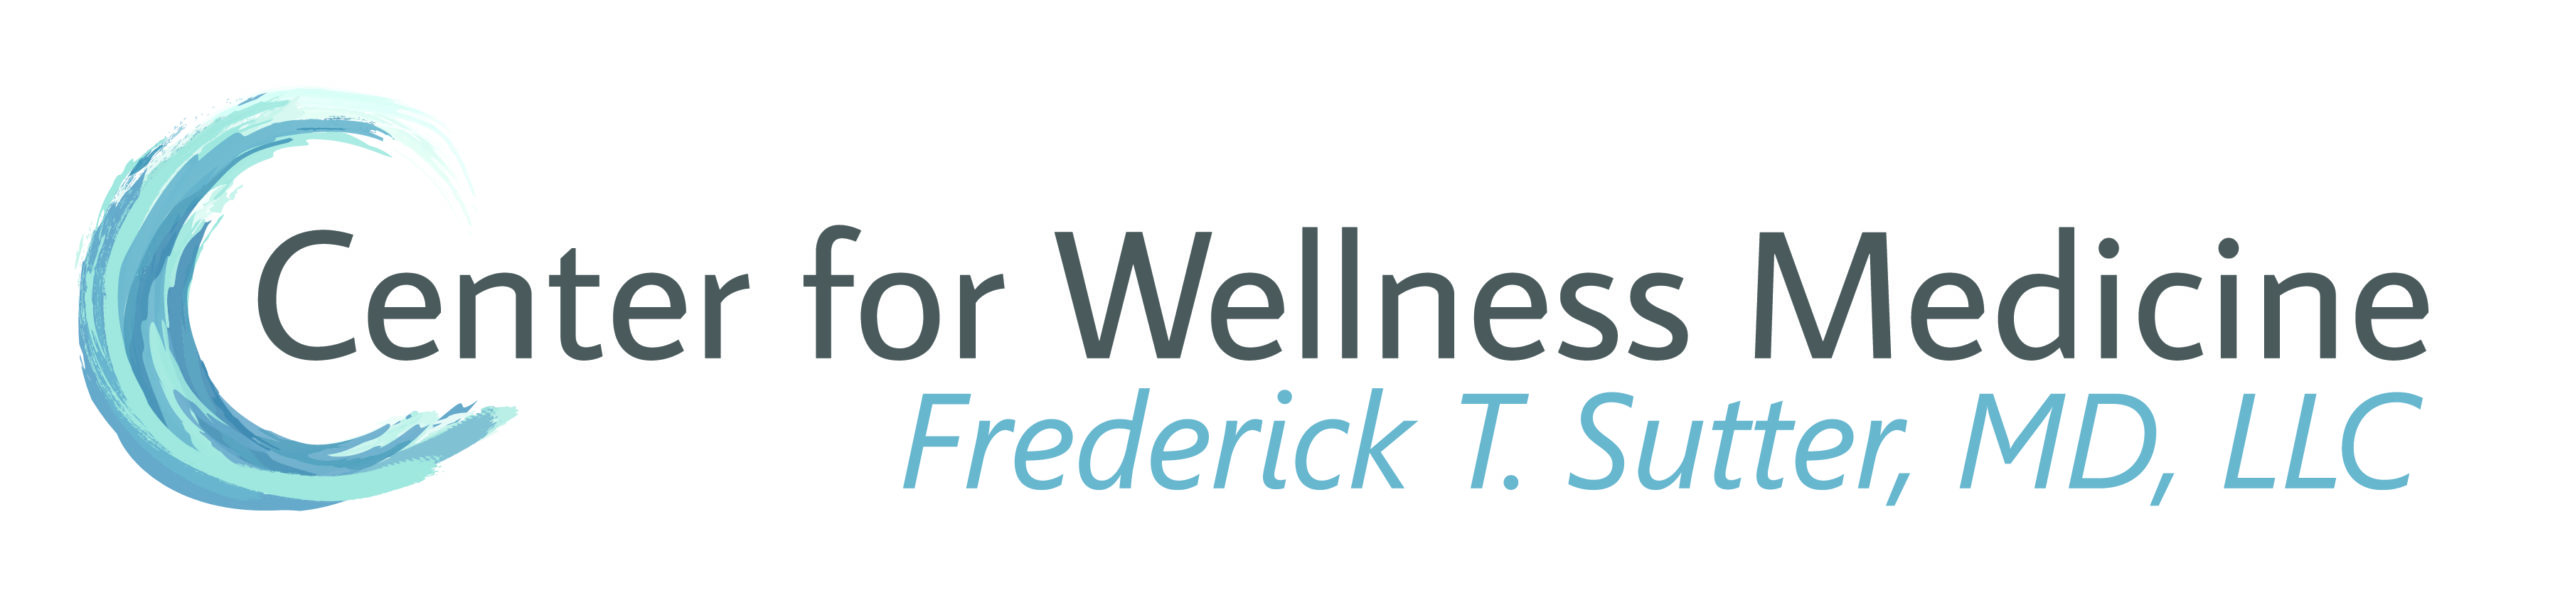 Center for Wellness Medicine